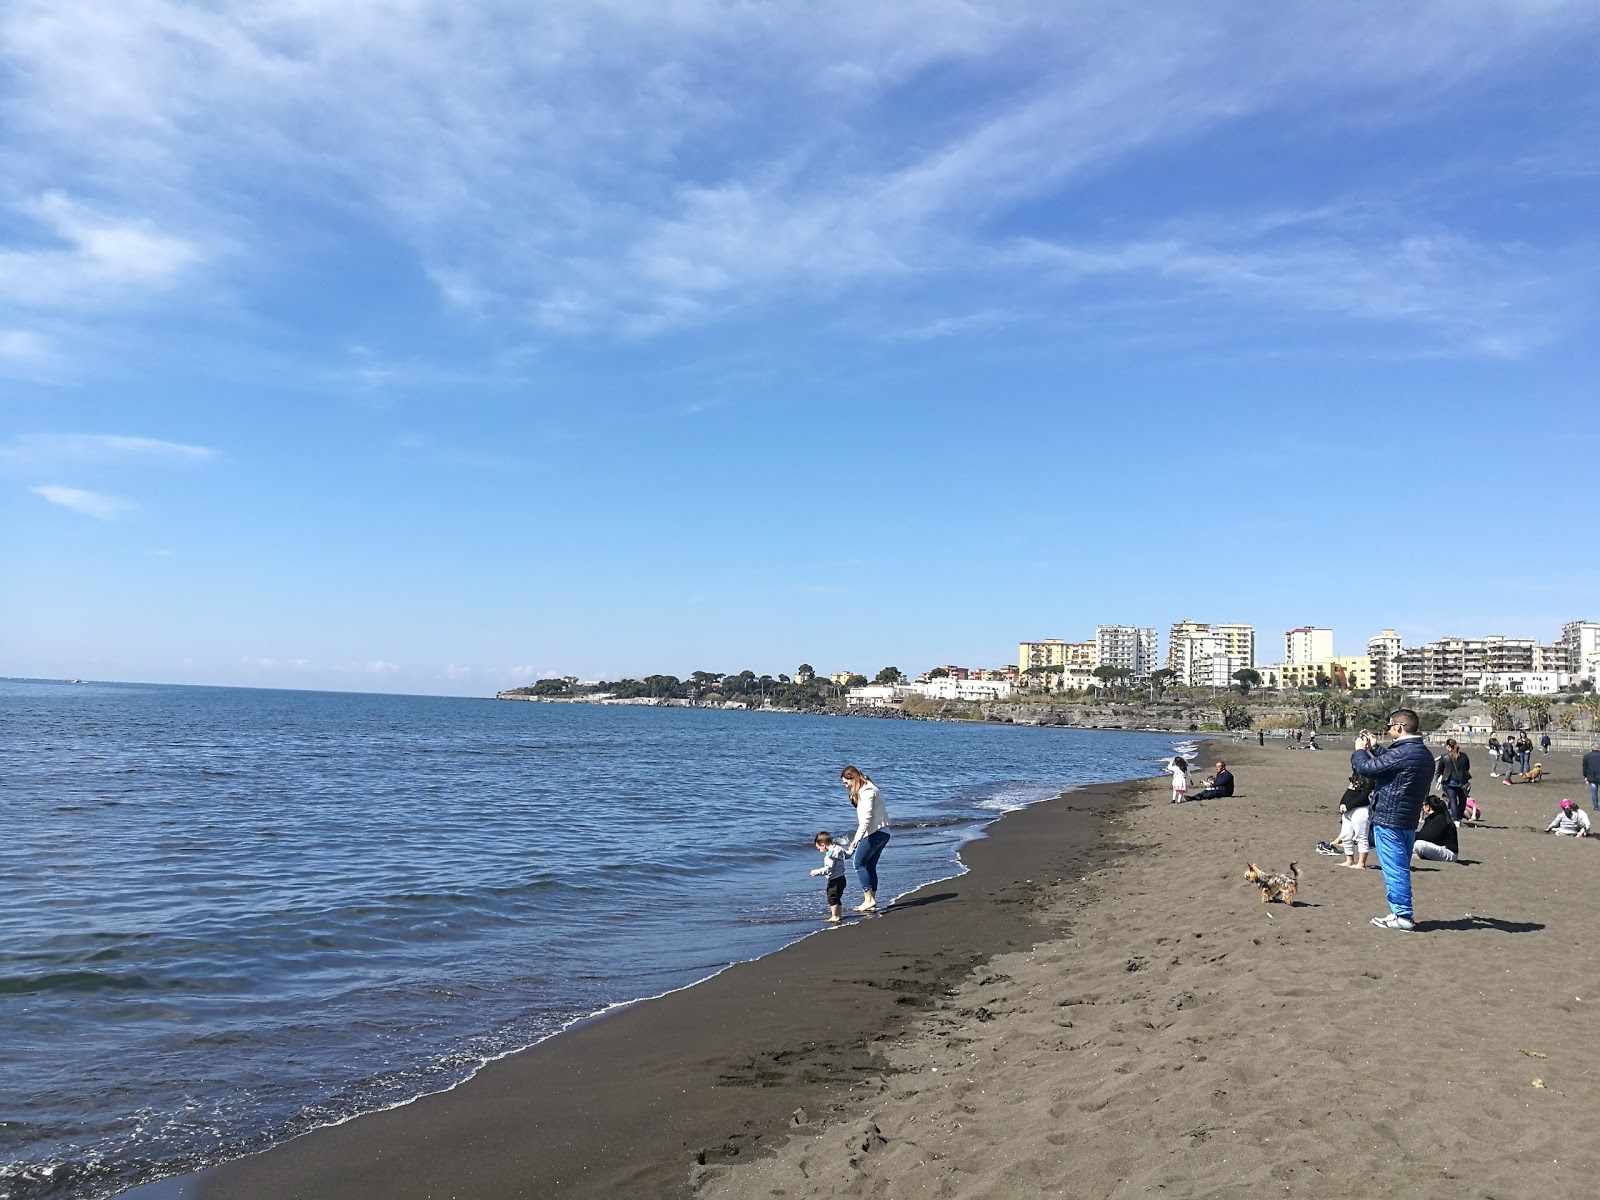 Foto de Torre Annunziata beach - lugar popular entre los conocedores del relax